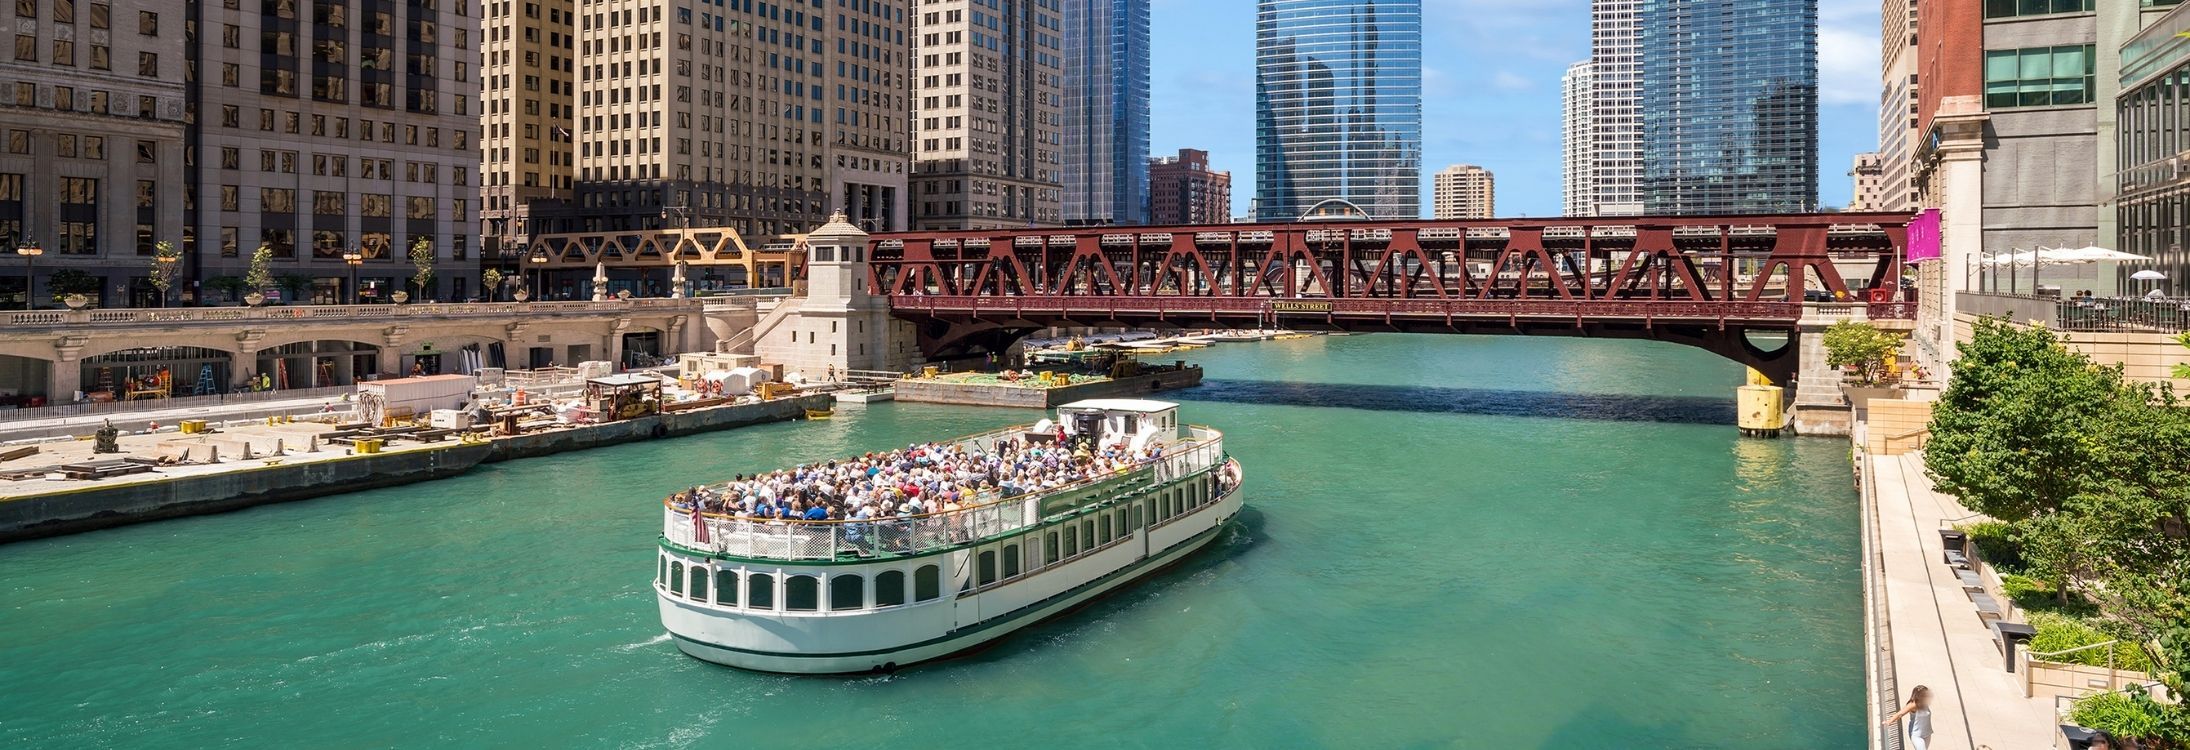 Chicago architecture river cruise, Illinois